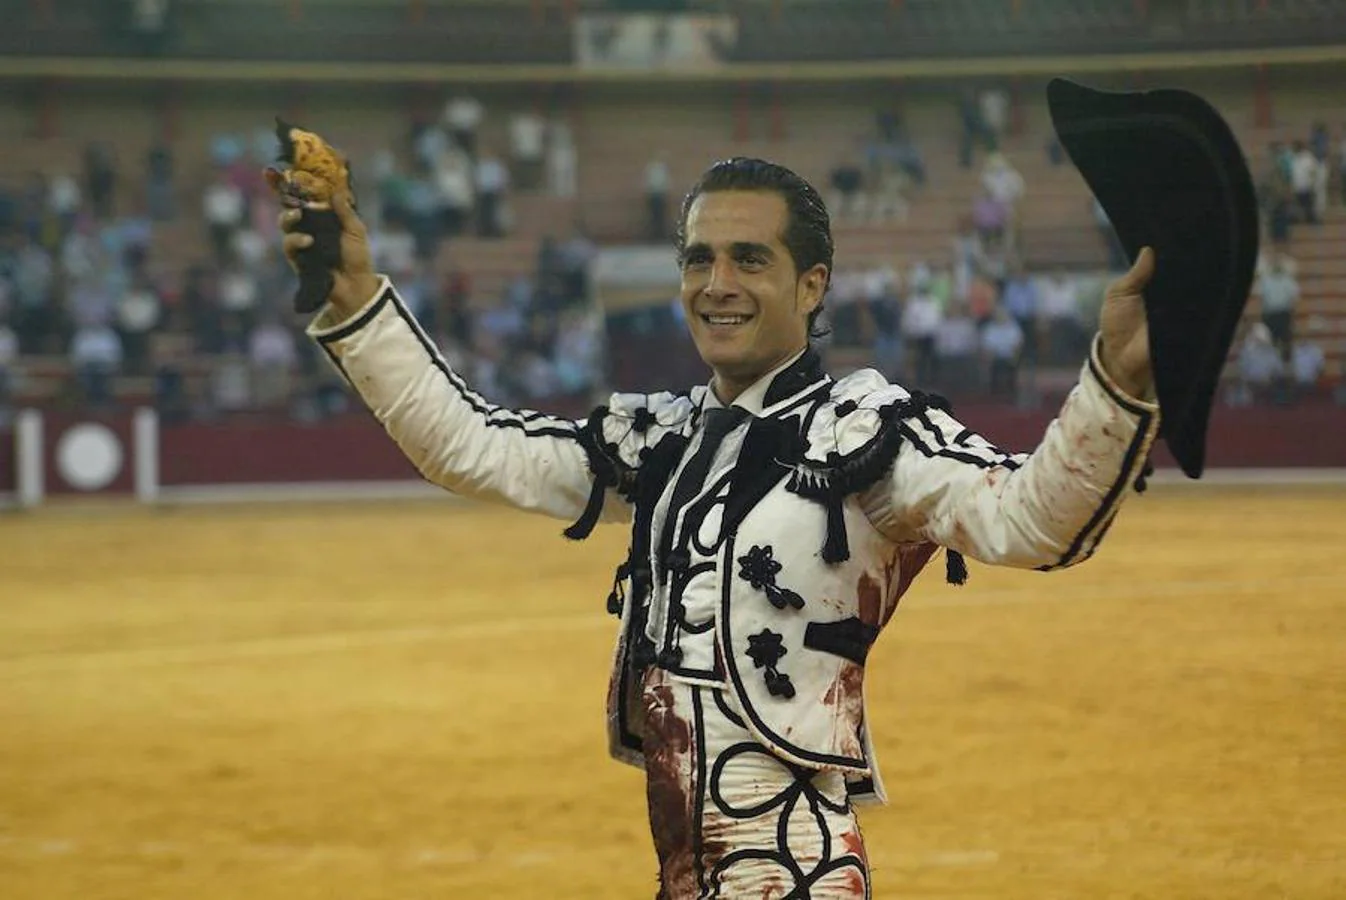 Iván Fandiño, en una imagen de 2012 tomada en la plaza de toros de Zaragoza